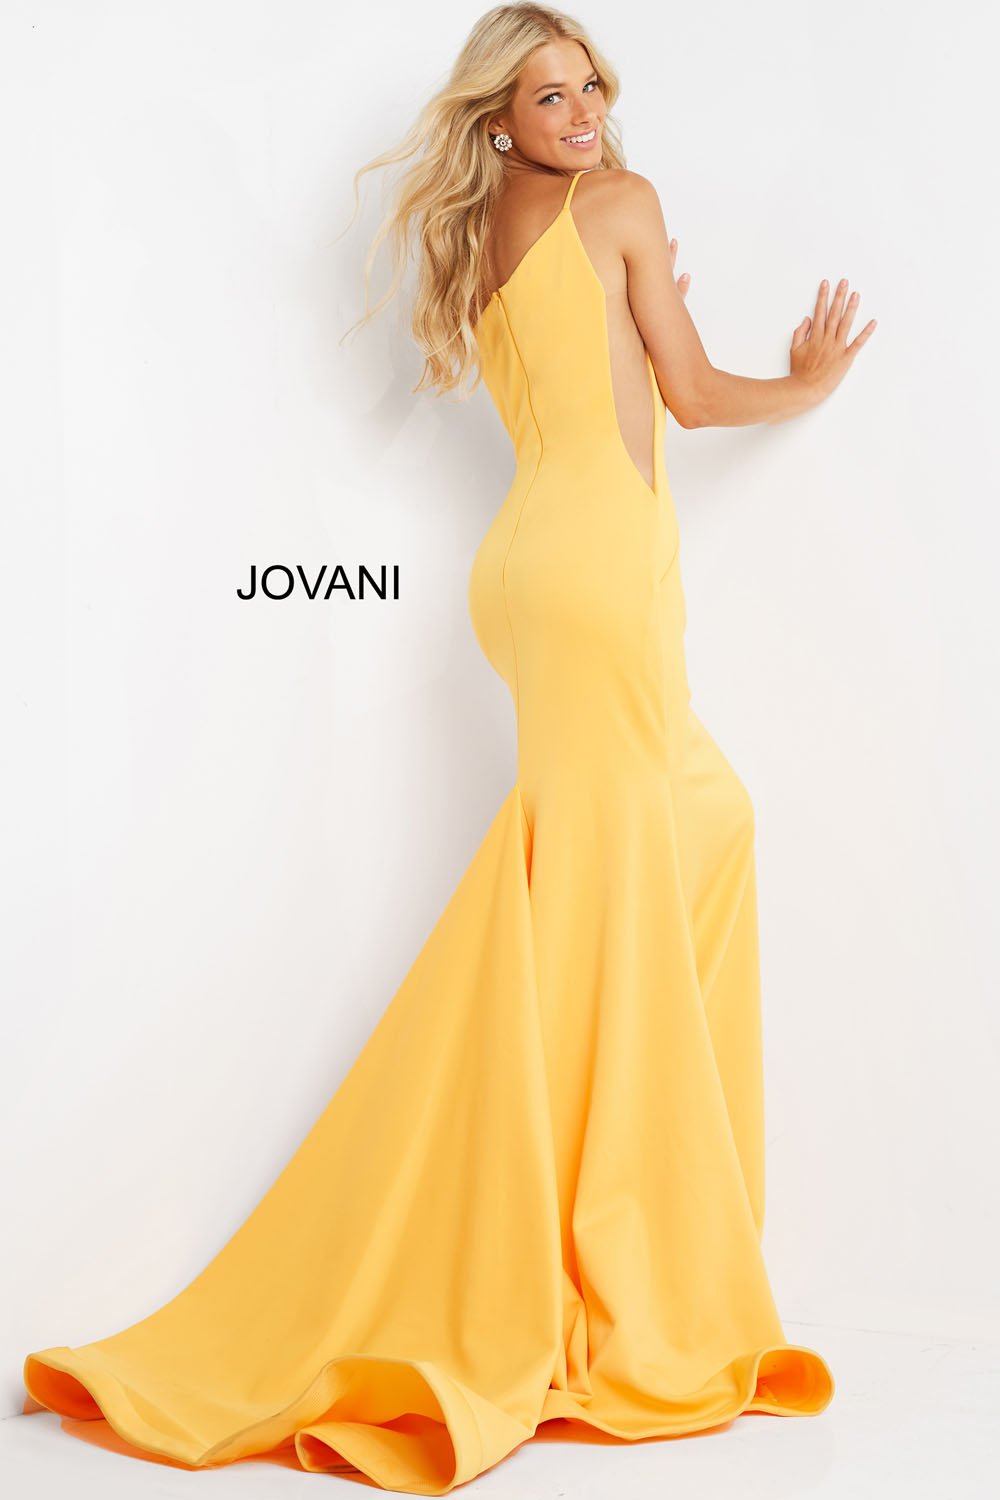 Jovani 06763 Dress | Jovani Dresses ...